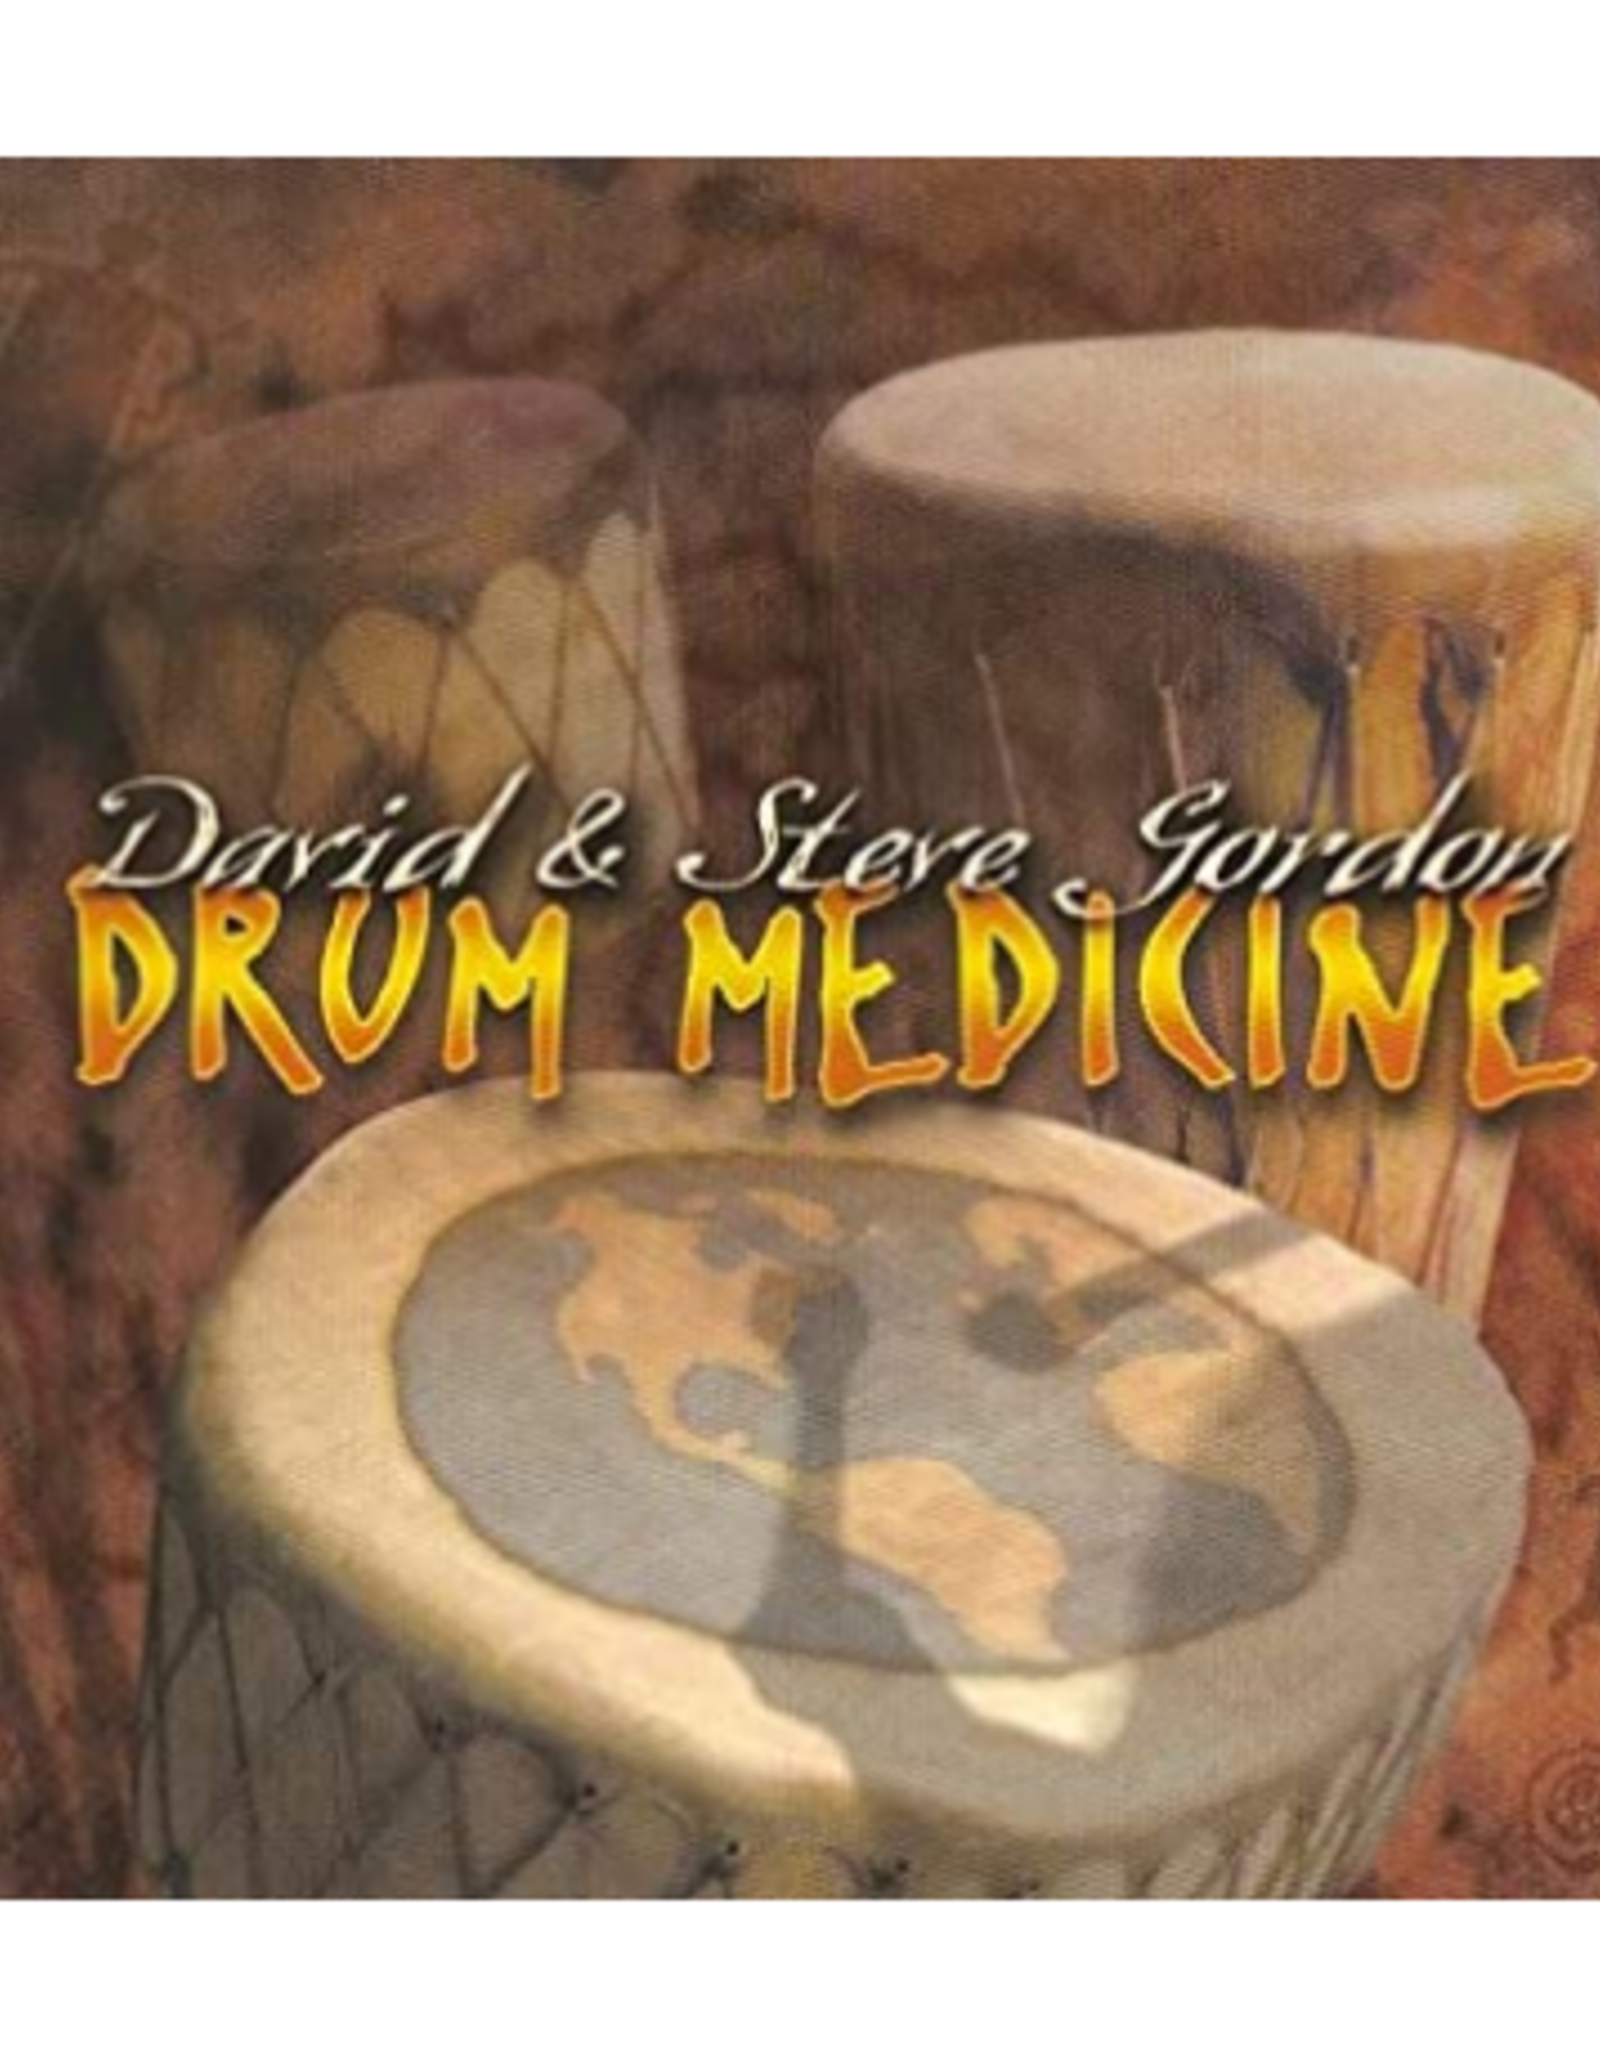 David Gordon Drum Medicine CD by David & Steve Gordon